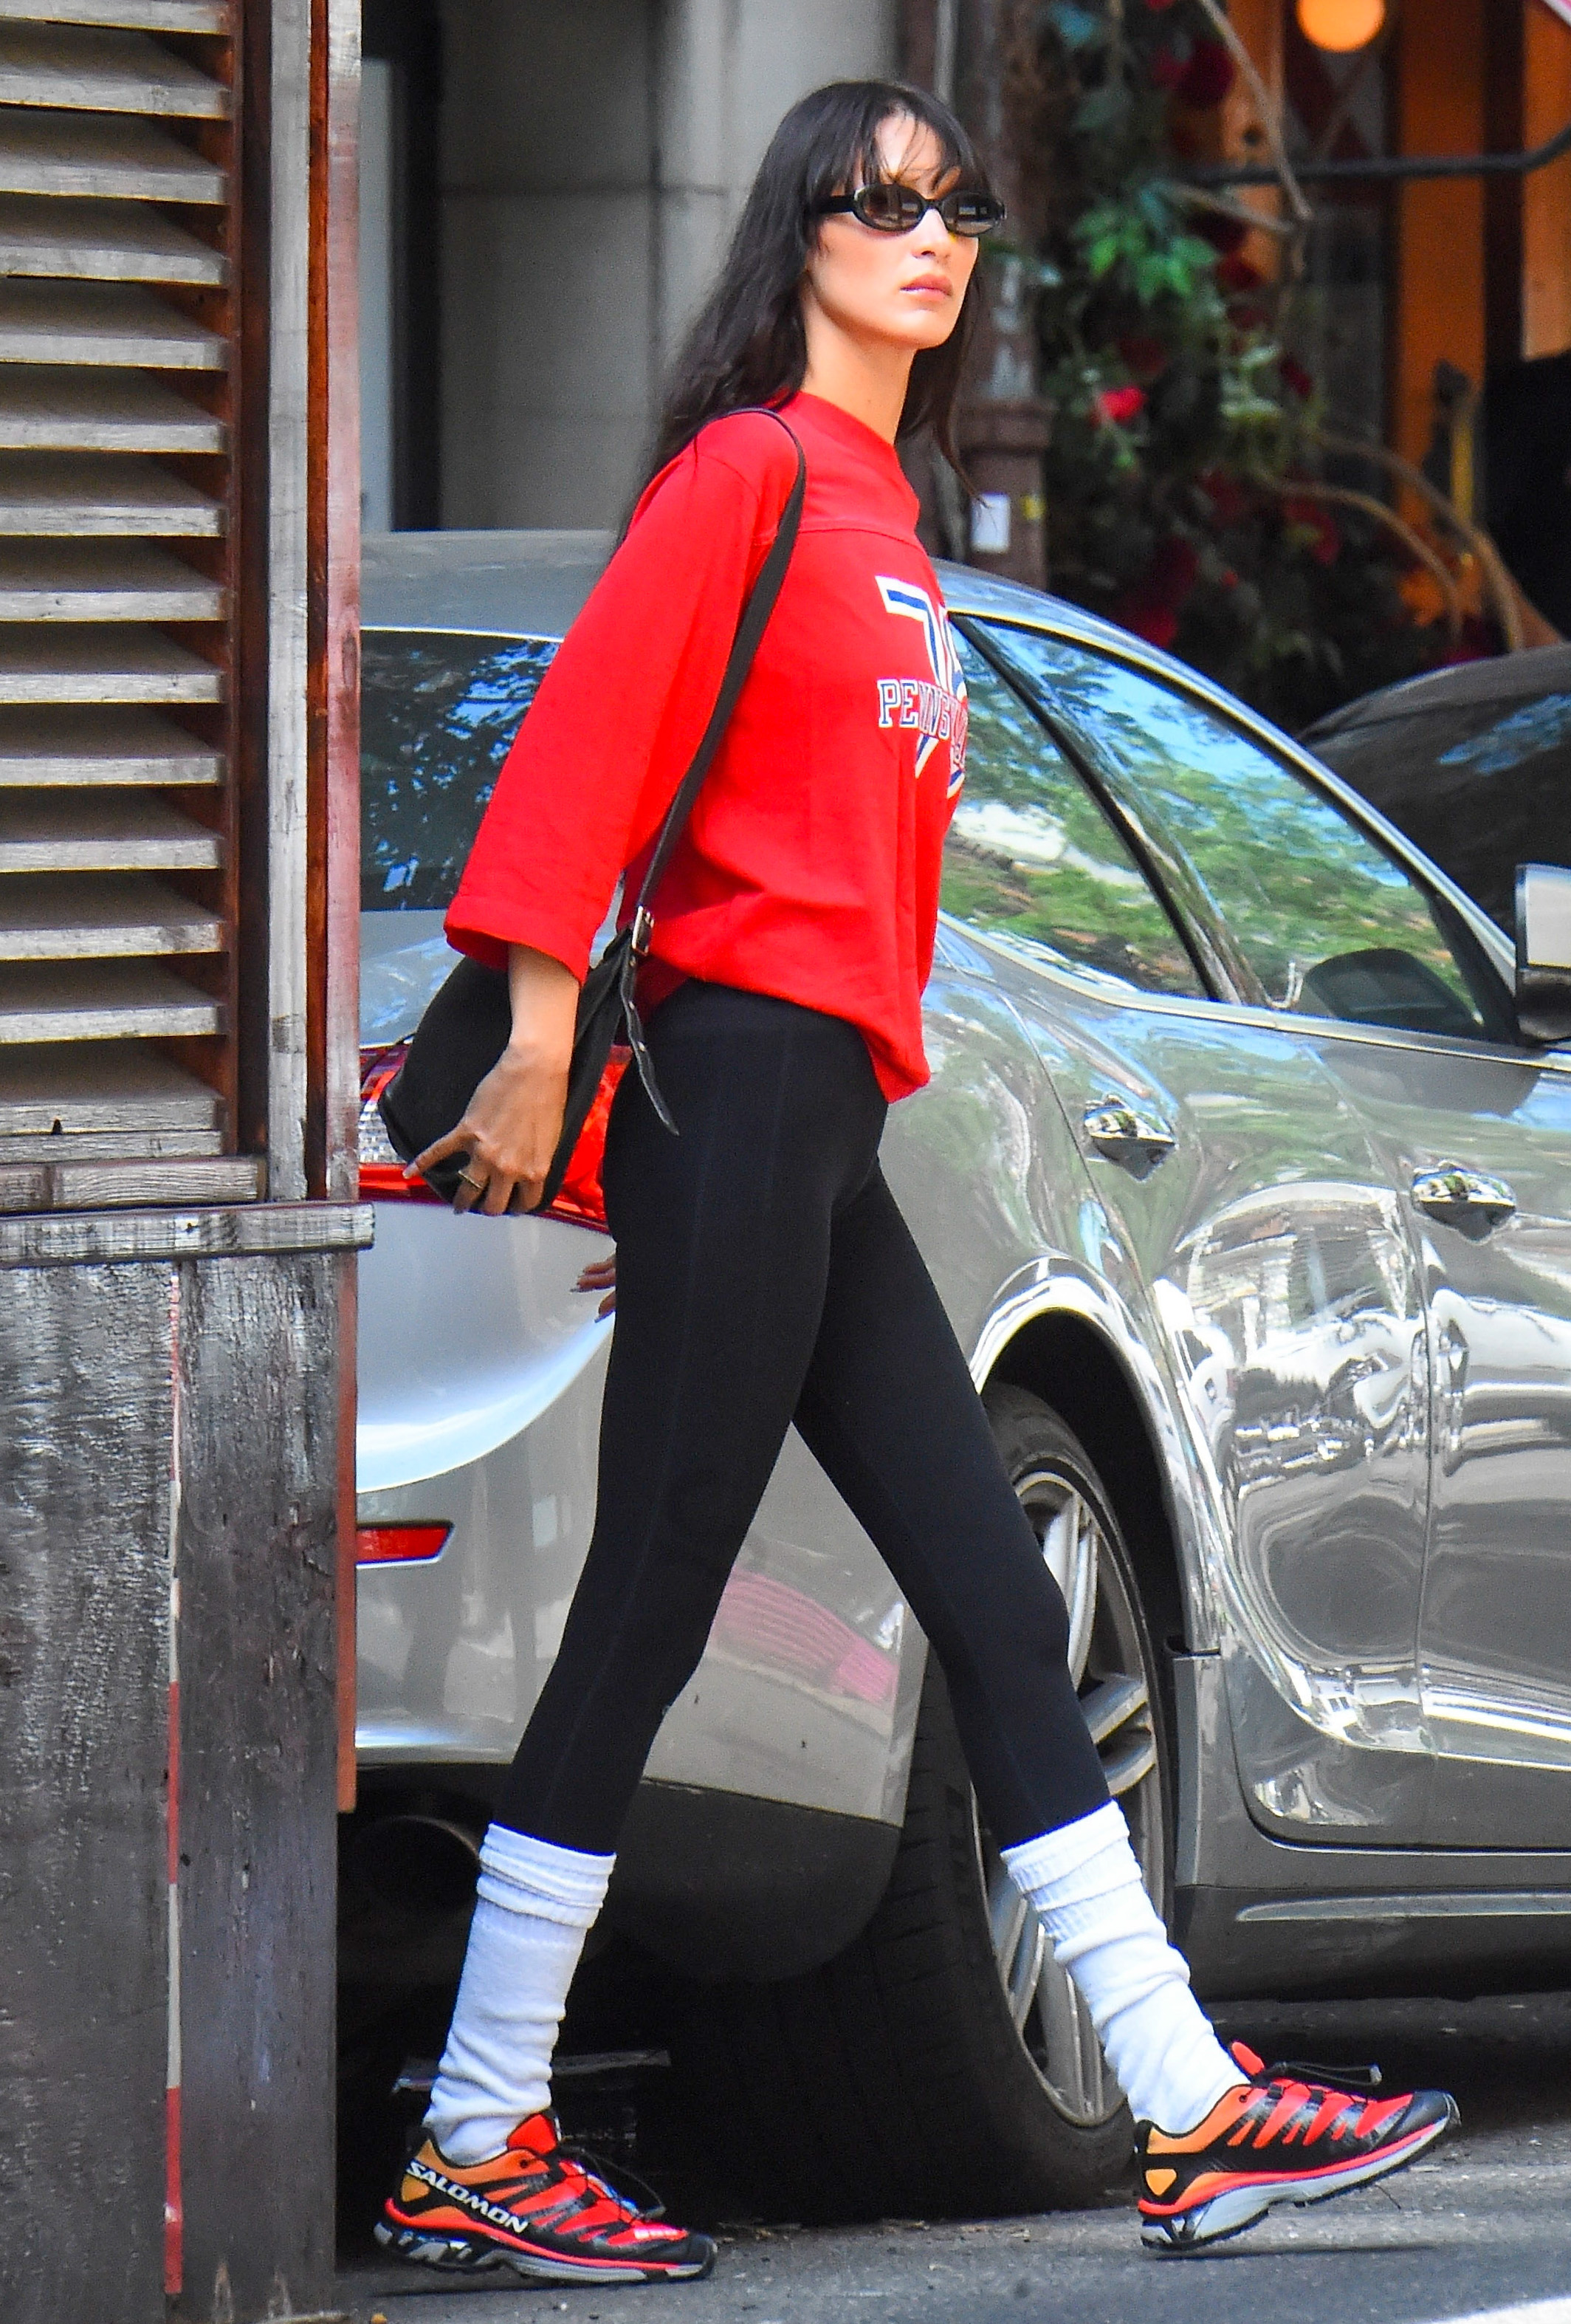 ¡Volvieron los 90! La supermodelo Bella Hadid salió a caminar por Manhattan luciendo un look que nos remite a aquella década: buzo rojo brillante y medias altas sobre calzas negras (Fotos: The Grosby Group) 
